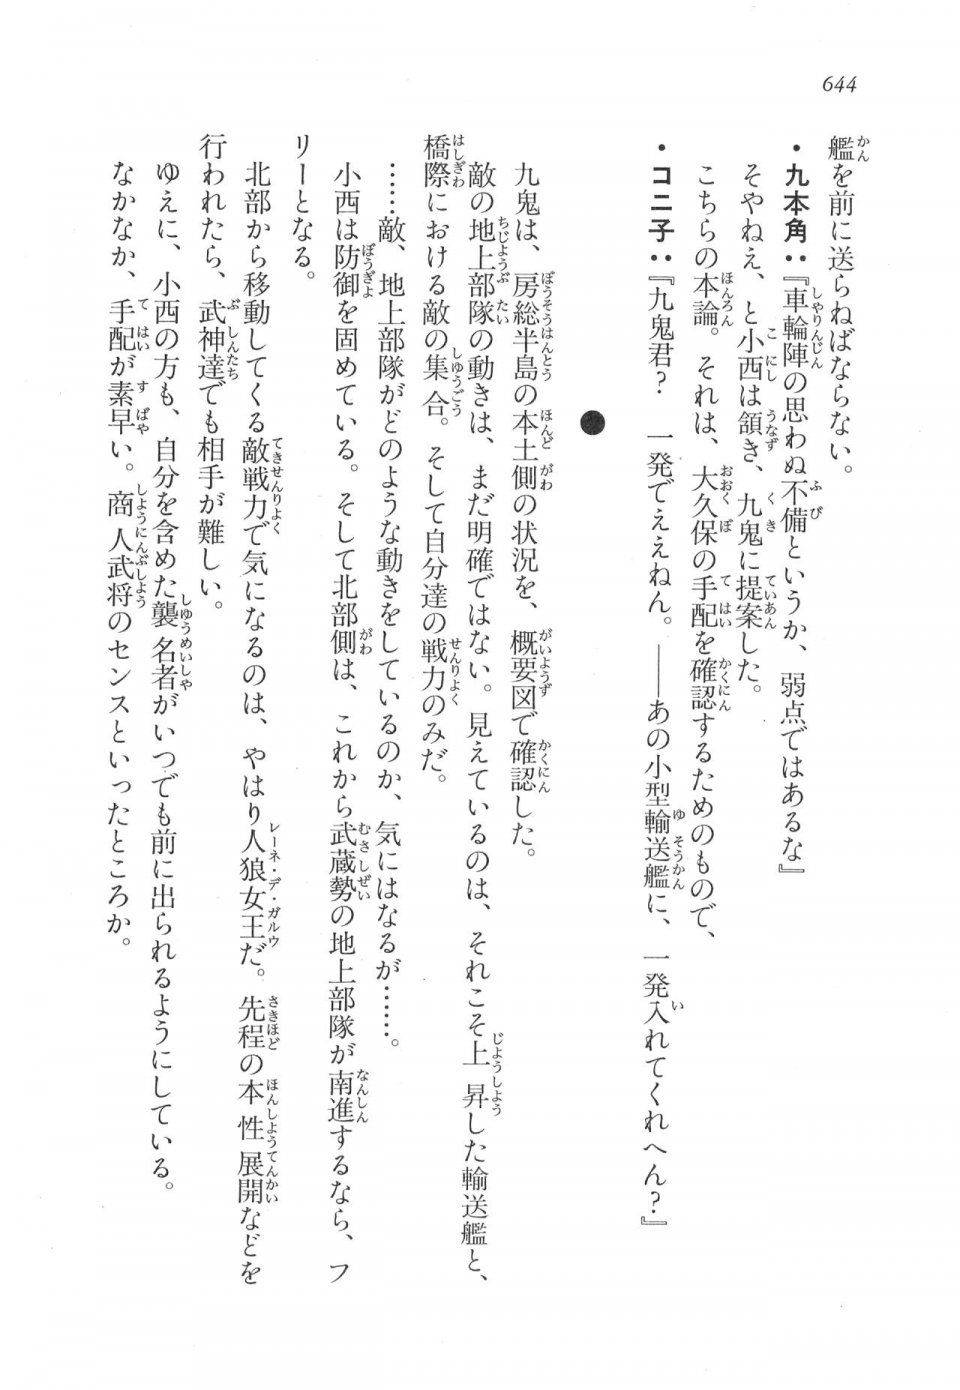 Kyoukai Senjou no Horizon LN Vol 17(7B) - Photo #646